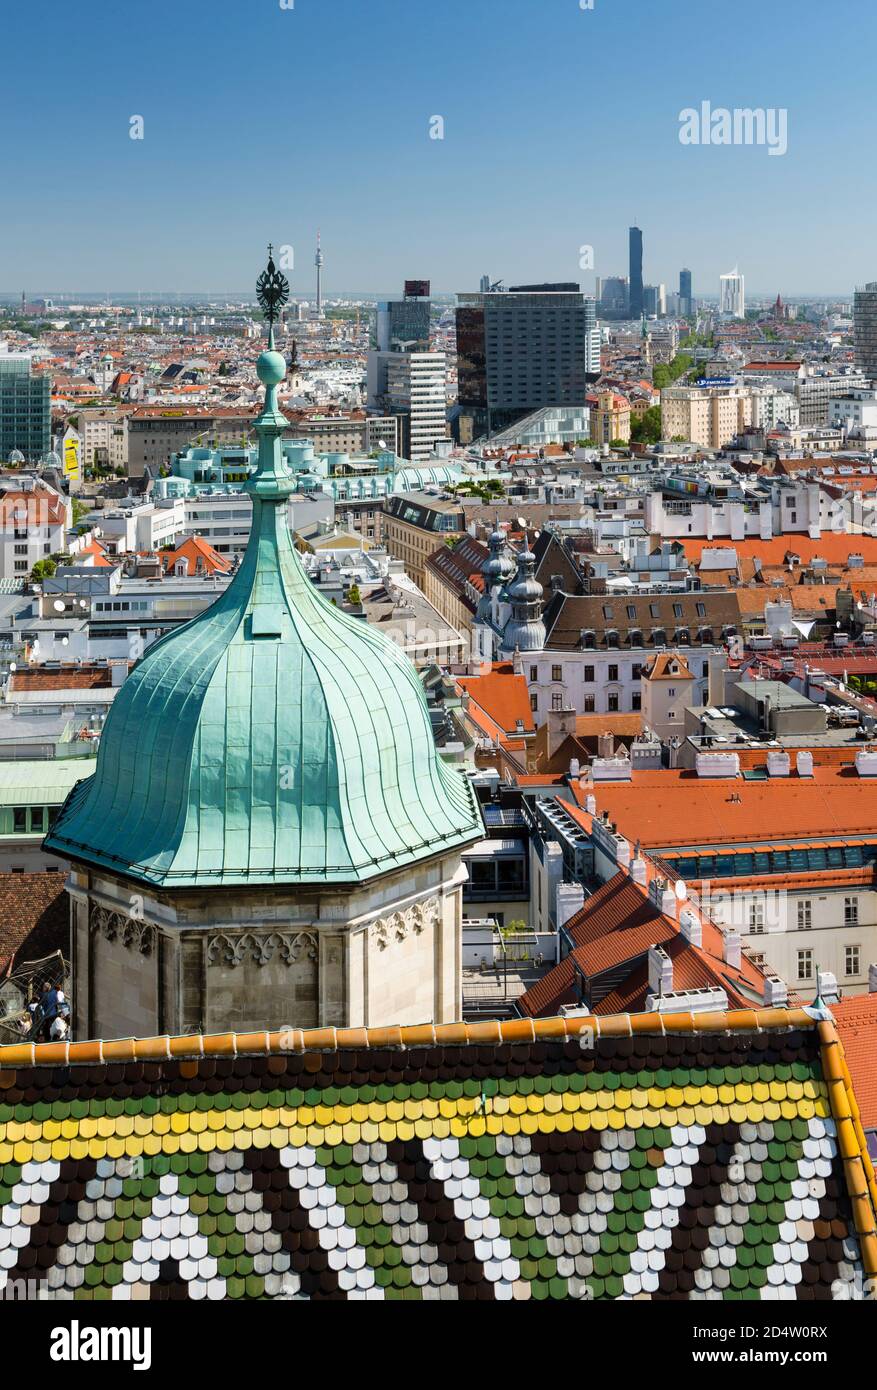 VIENNE - MAI 7 : vue sur la ville de Vienne sur le toit du Stephansdom à la ville de Donau en arrière-plan, Autriche le 7 mai 2018 Banque D'Images